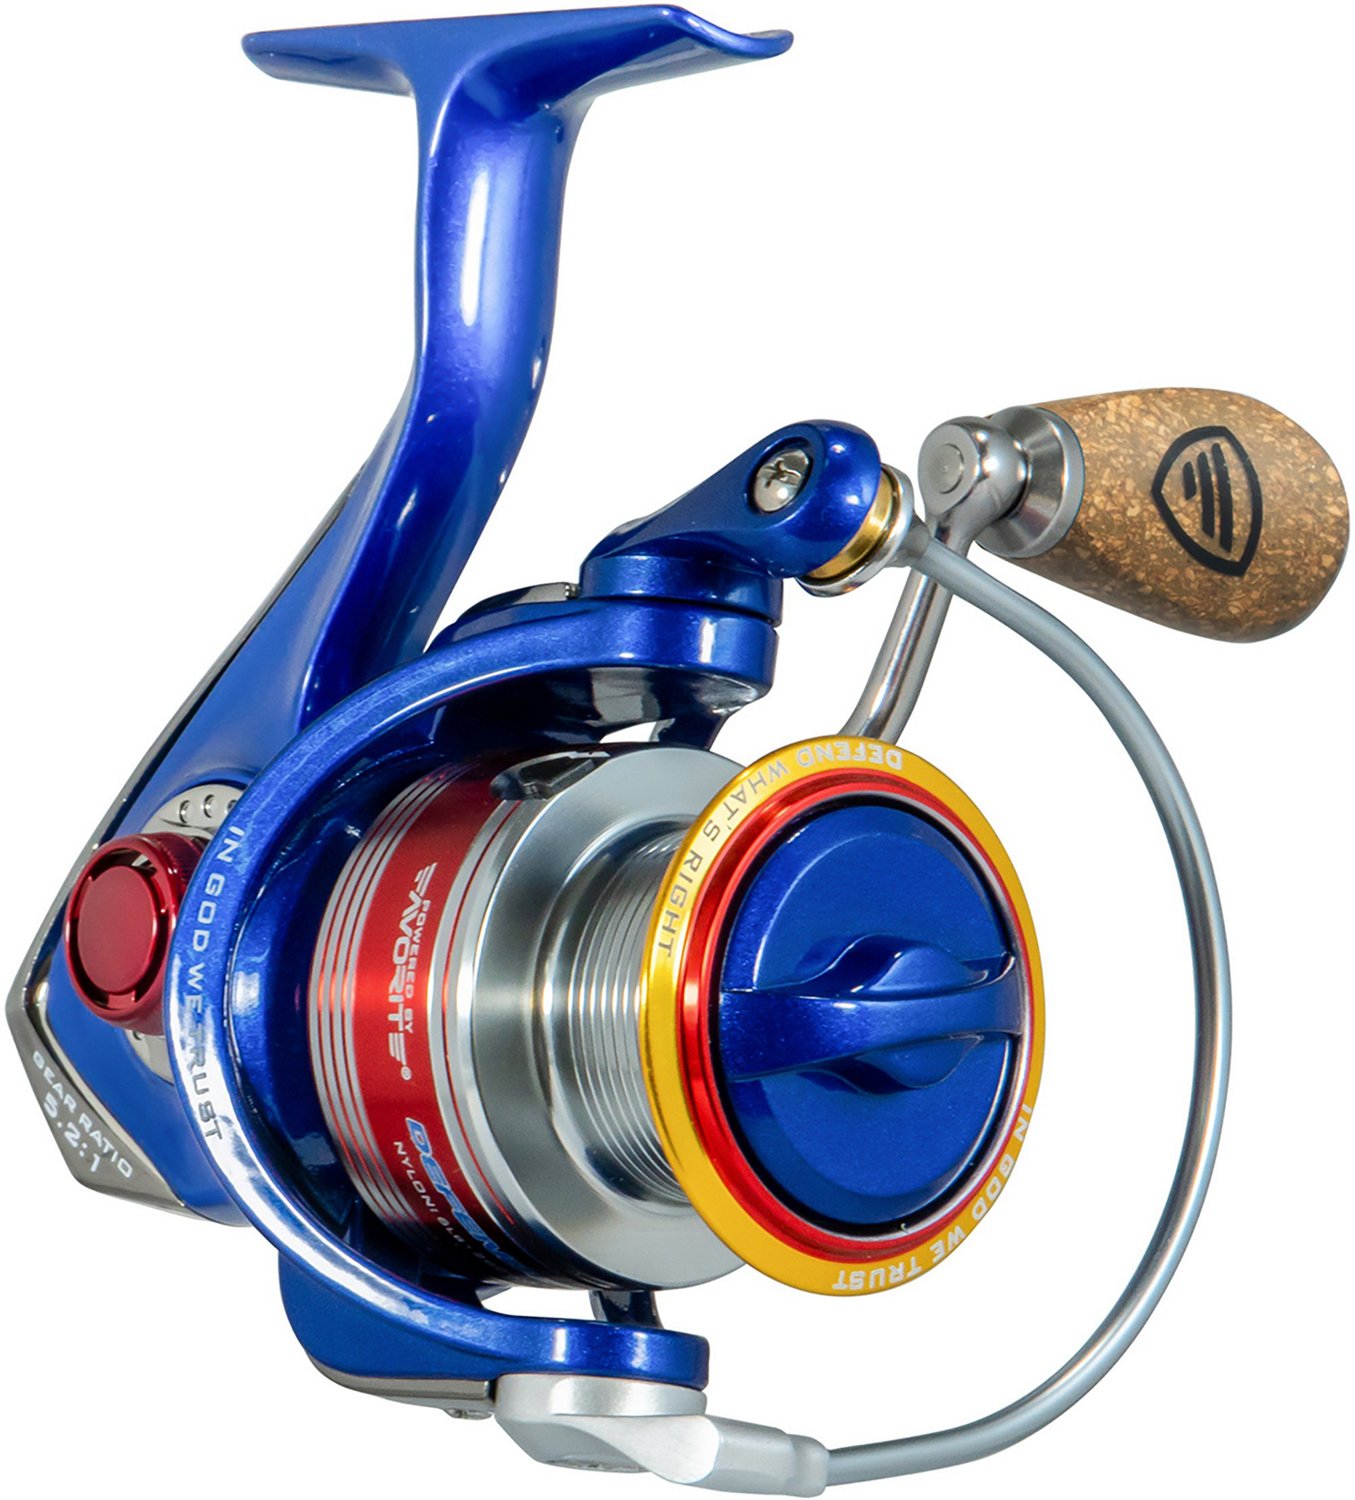 Gear Ratio Spinning Reel,5.2:1 Gear Ratio Spinning Fishing Reel Spinning  Reel Smooth Operation